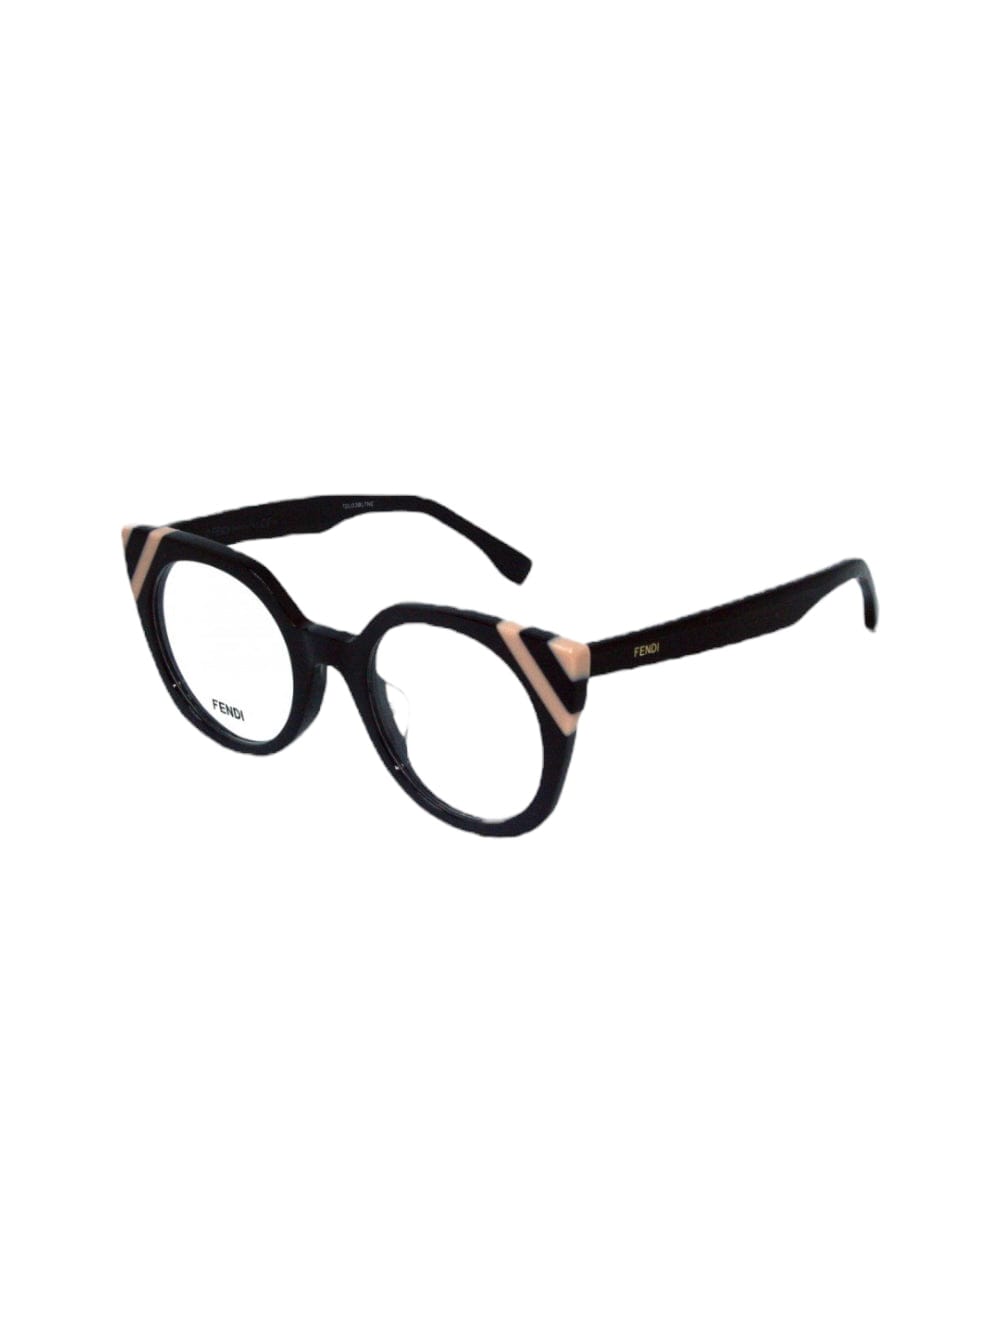 Fendi Ff 0246 - Grey Glasses